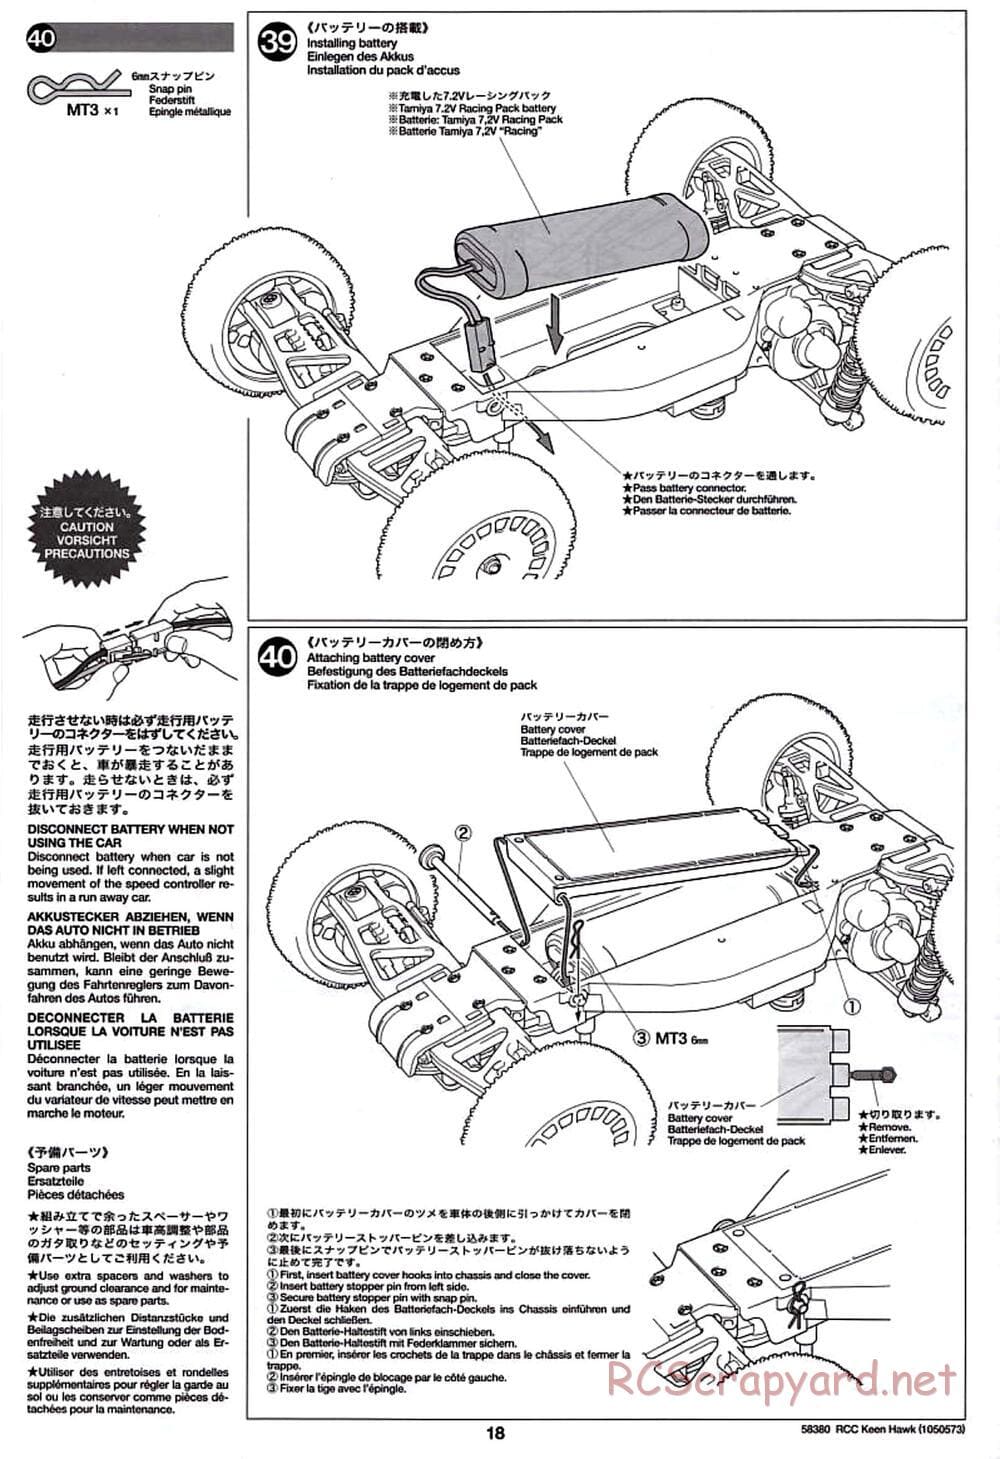 Tamiya - Keen Hawk Chassis - Manual - Page 18